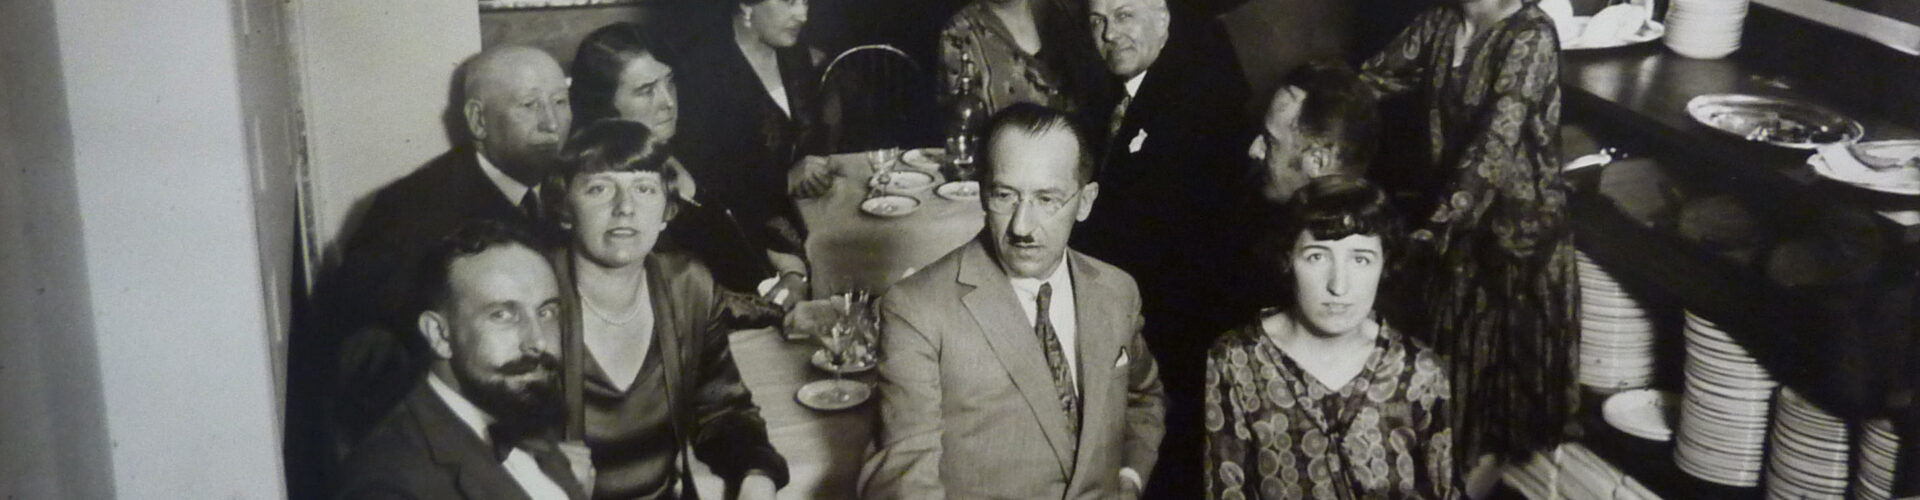 Een zwart-witfoto van Piet Mondriaan en zijn vrienden